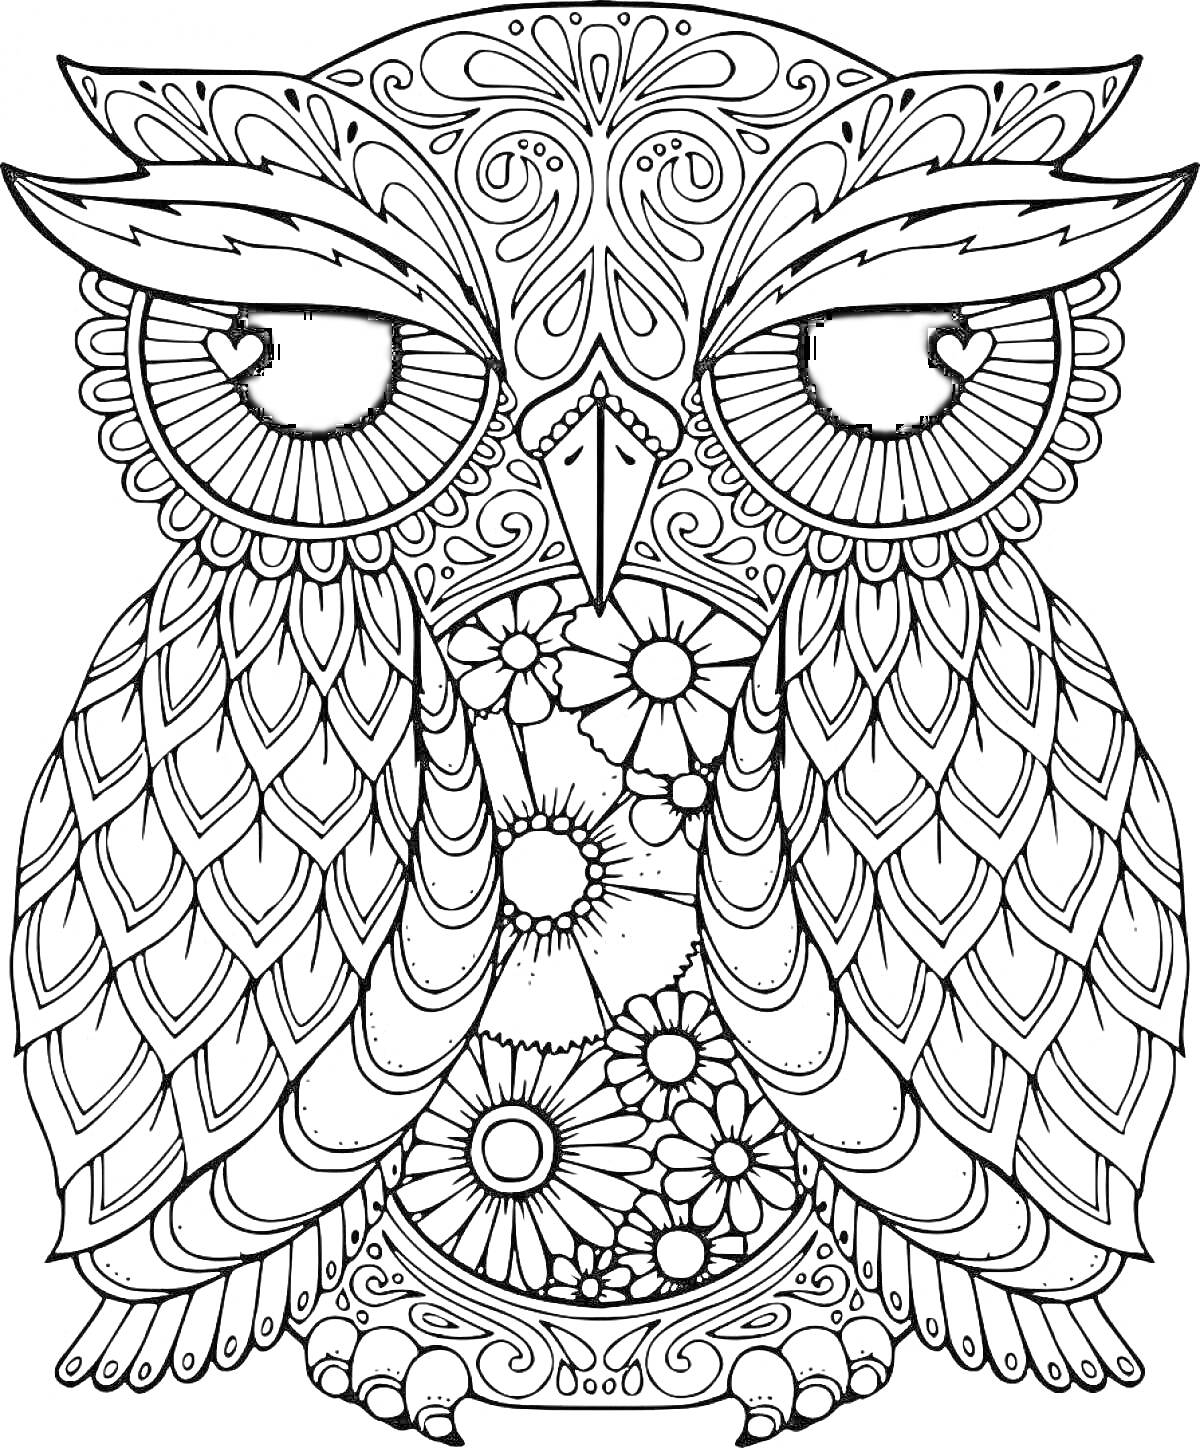 Раскраска Сложная сова с узорами и цветами, с большими глазами и детализированным оперением